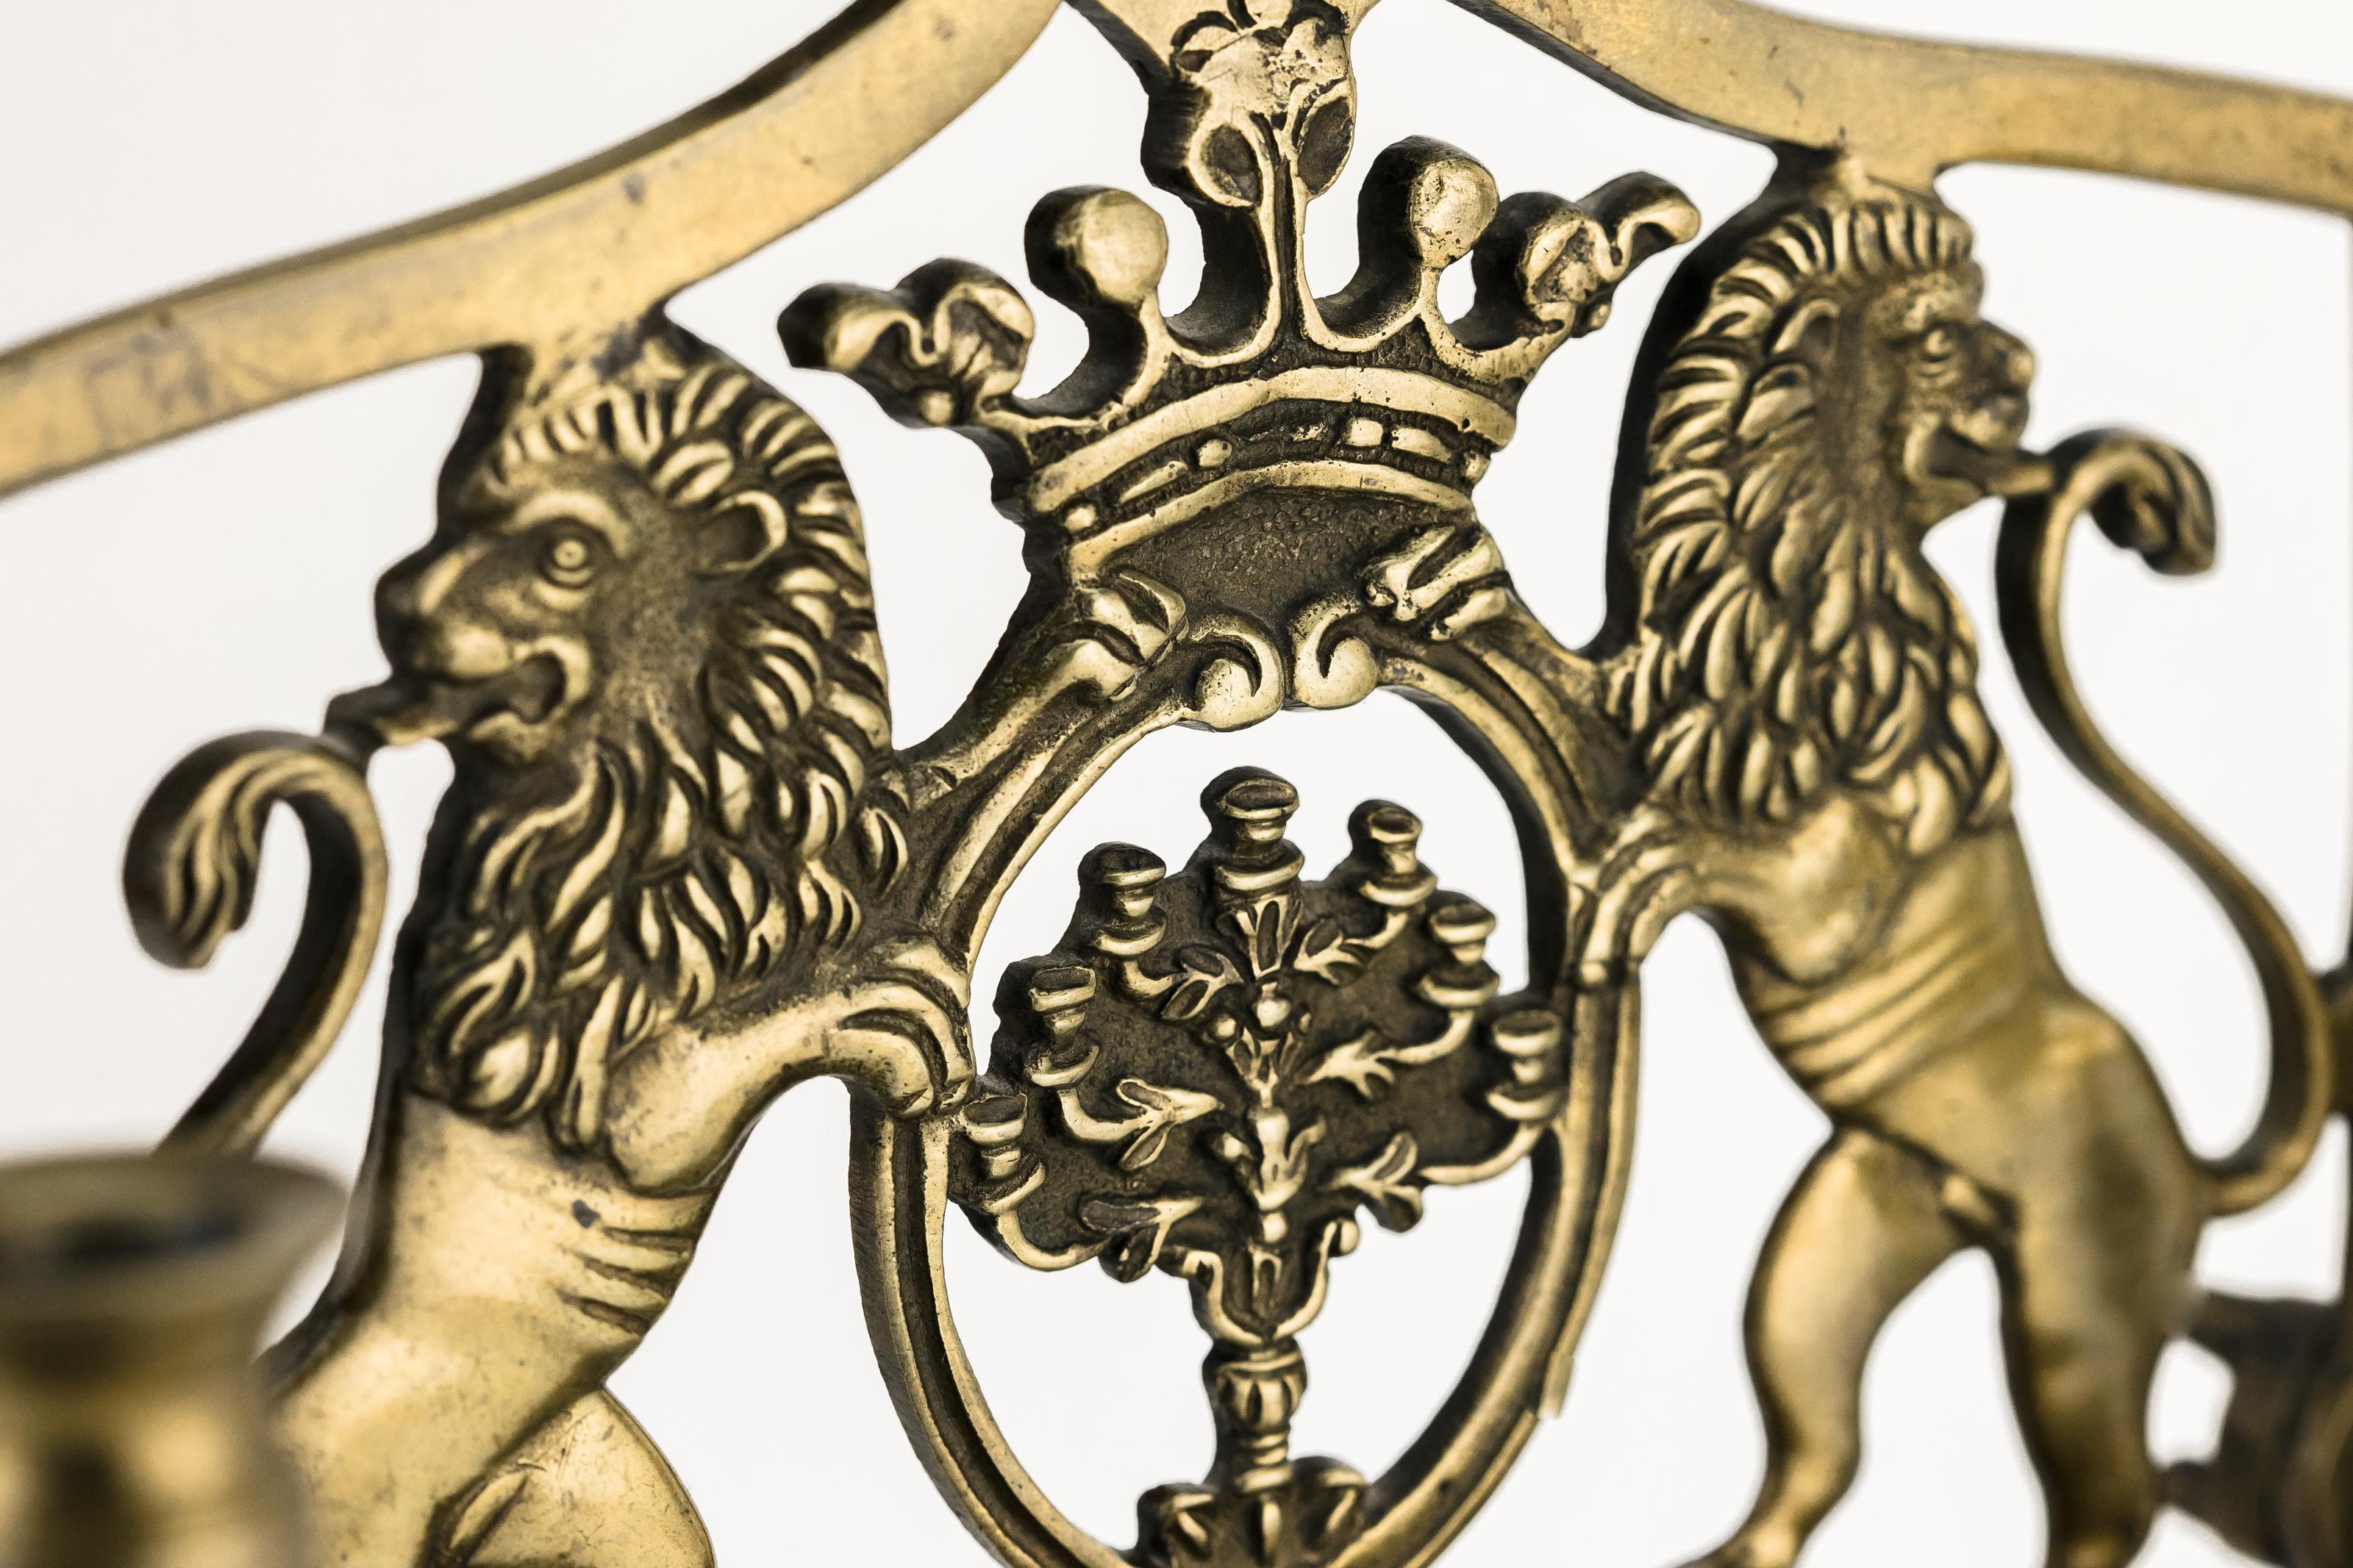 Die Rückwand ist mit zwei Löwen von Juda gegossen, die eine gekrönte Kartusche mit der Tempelmenora flankieren. Die Seitenwände sind mit zwei Lichtern ausgestattet, vor denen sich eine Reihe von acht Ölfässern mit einer kastenförmigen Tropfschale